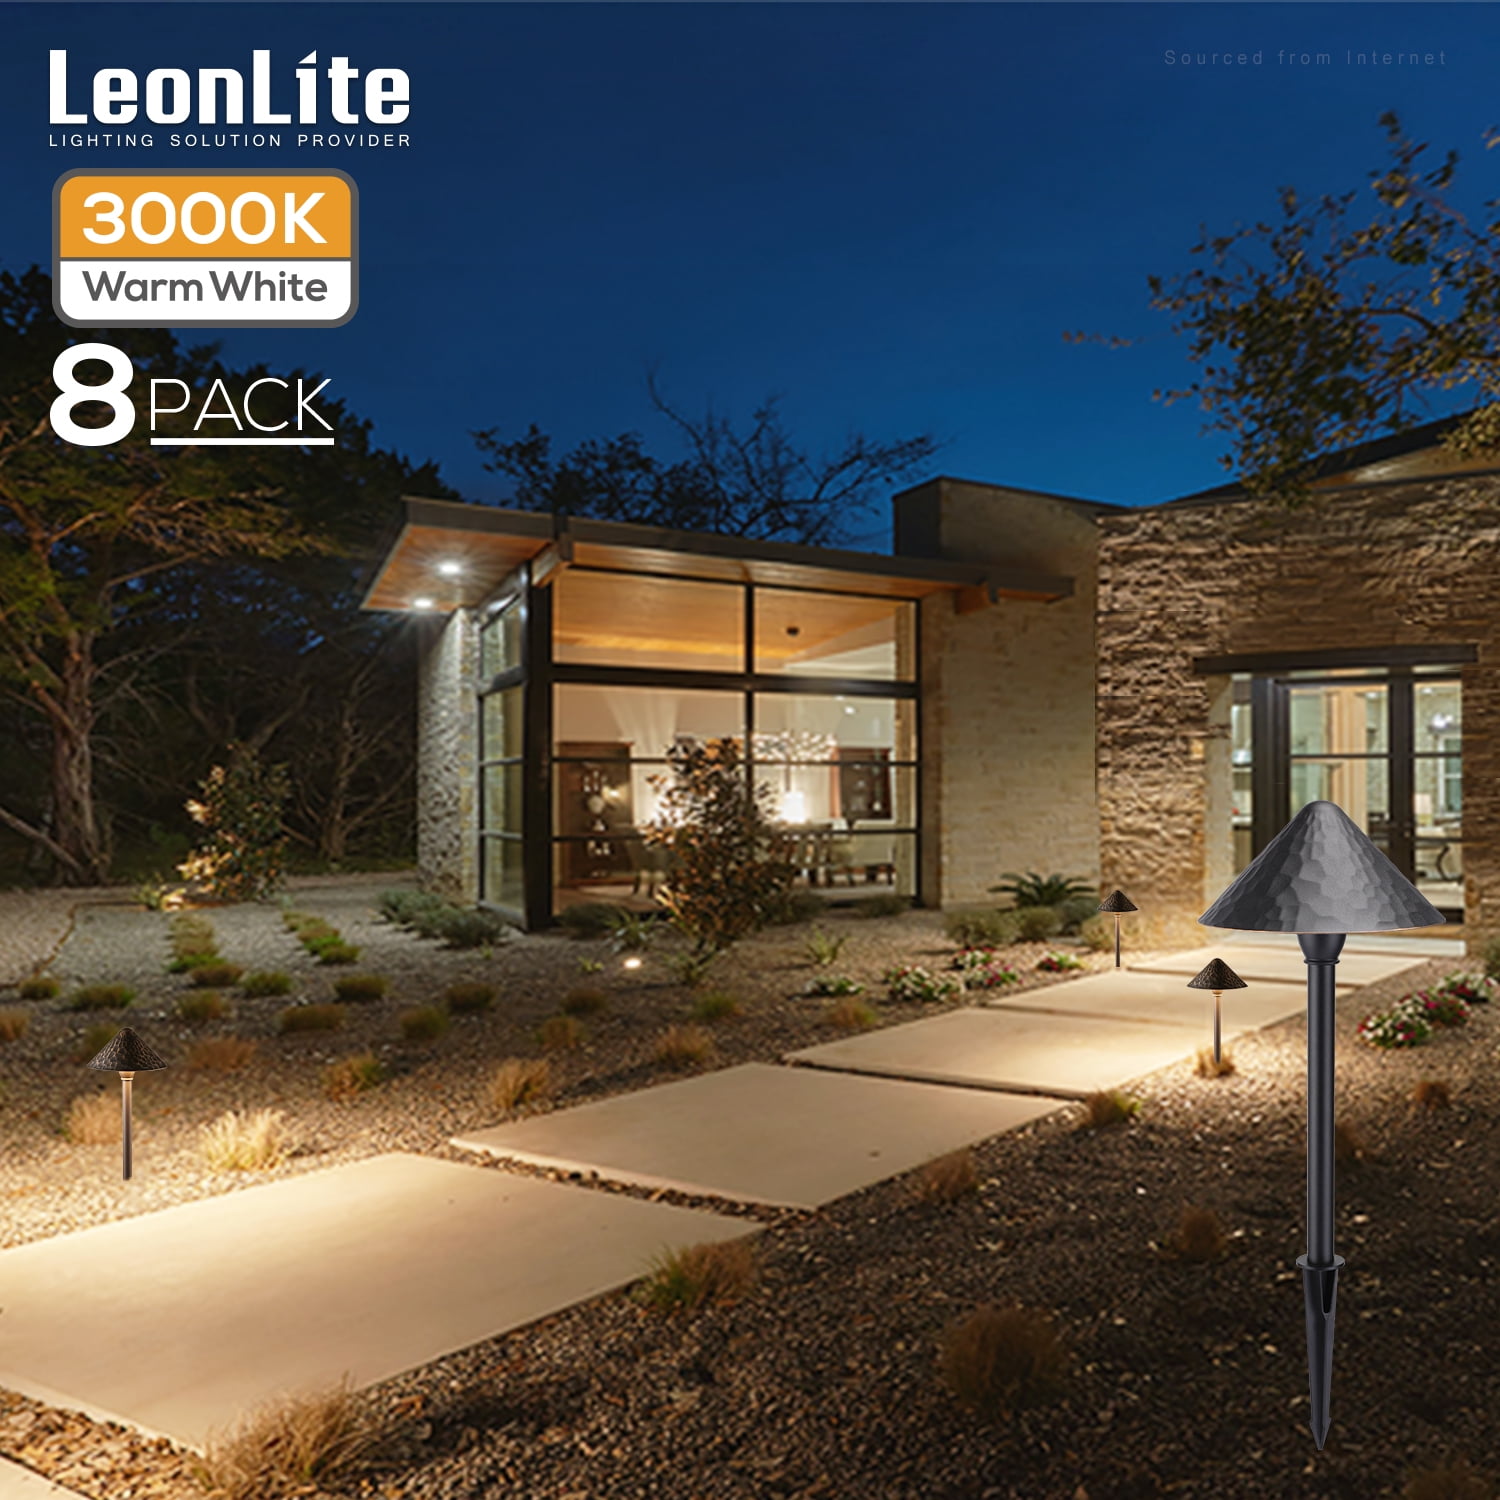  LEONLITE 12-Pack LED Landscape Lights Low Voltage, 3W